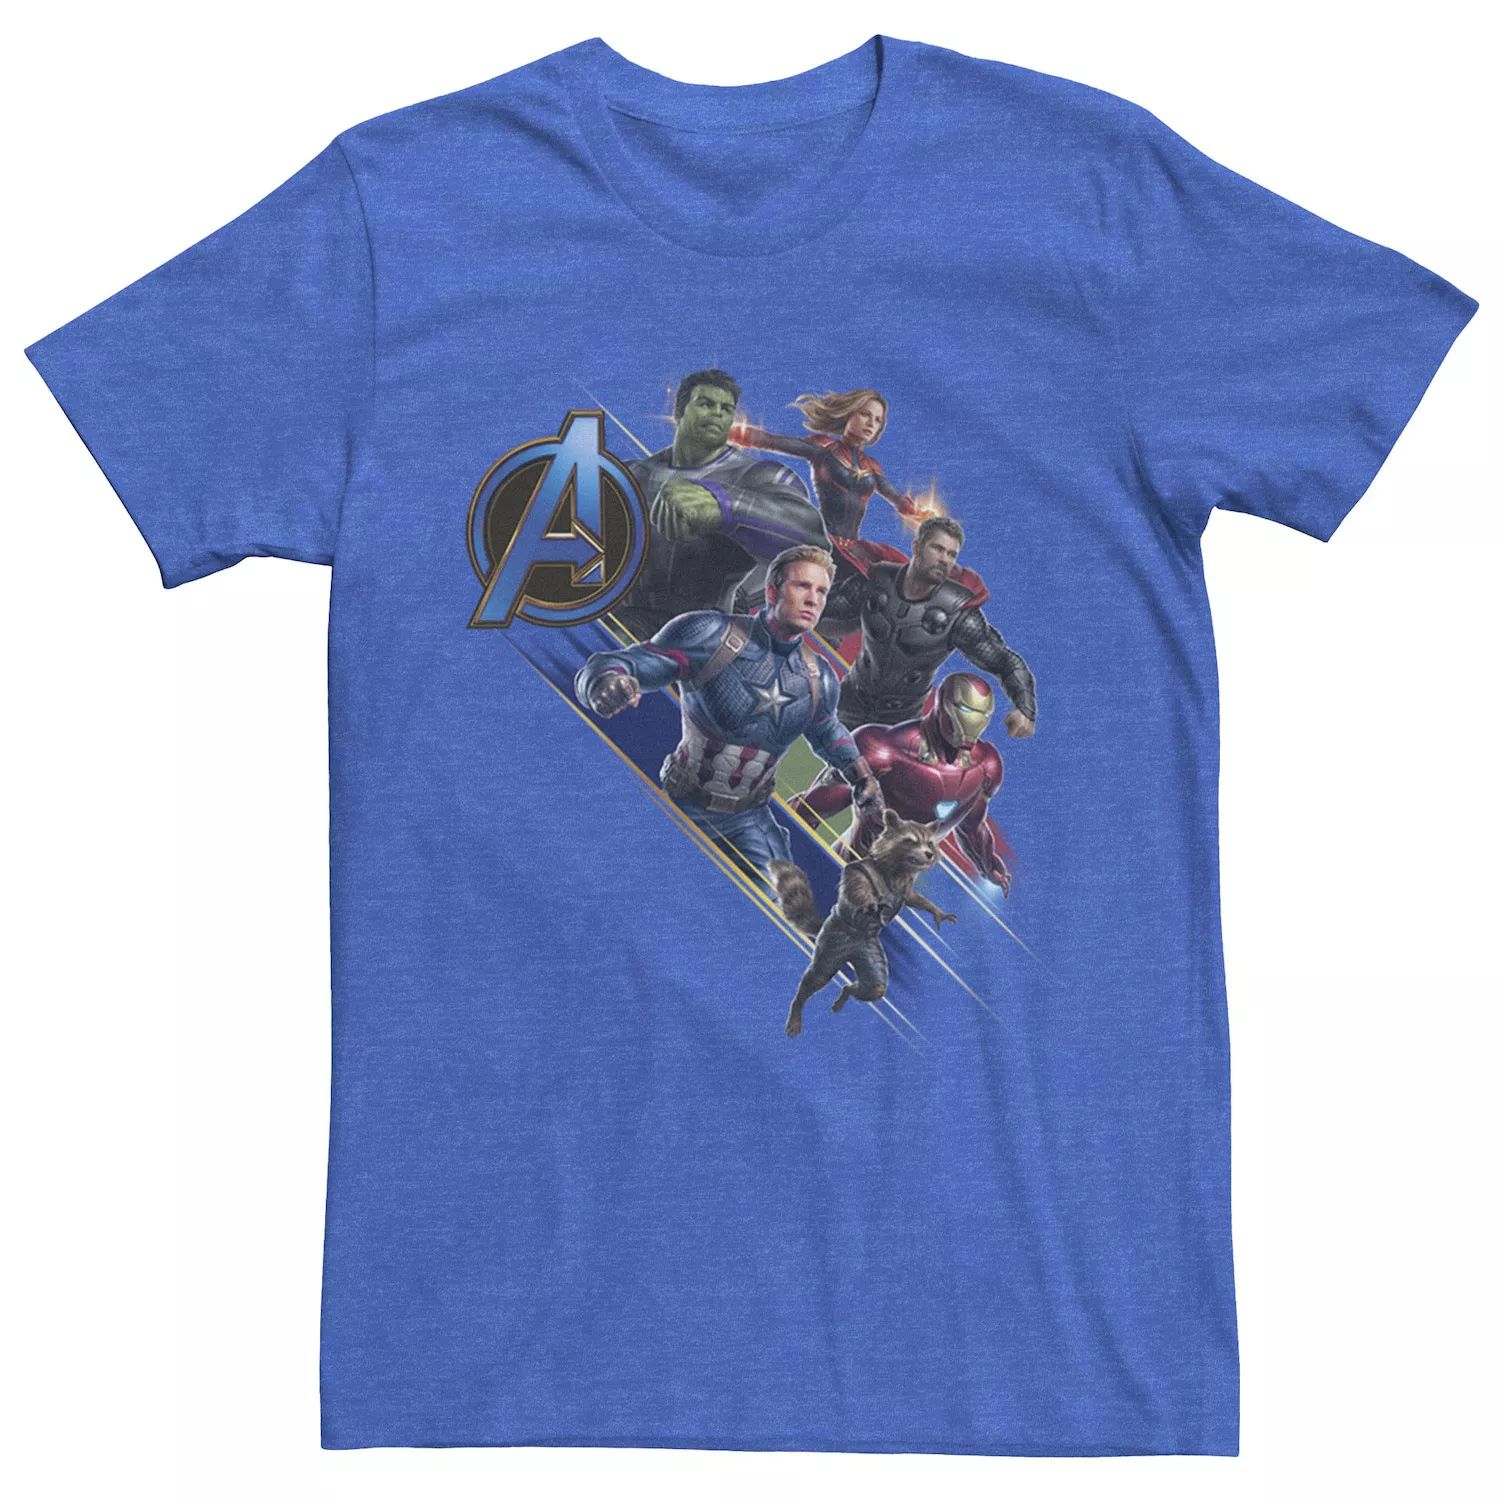 Мужская футболка с логотипом Avengers Endgame Action Pose Marvel 3d постер avengers endgame to action